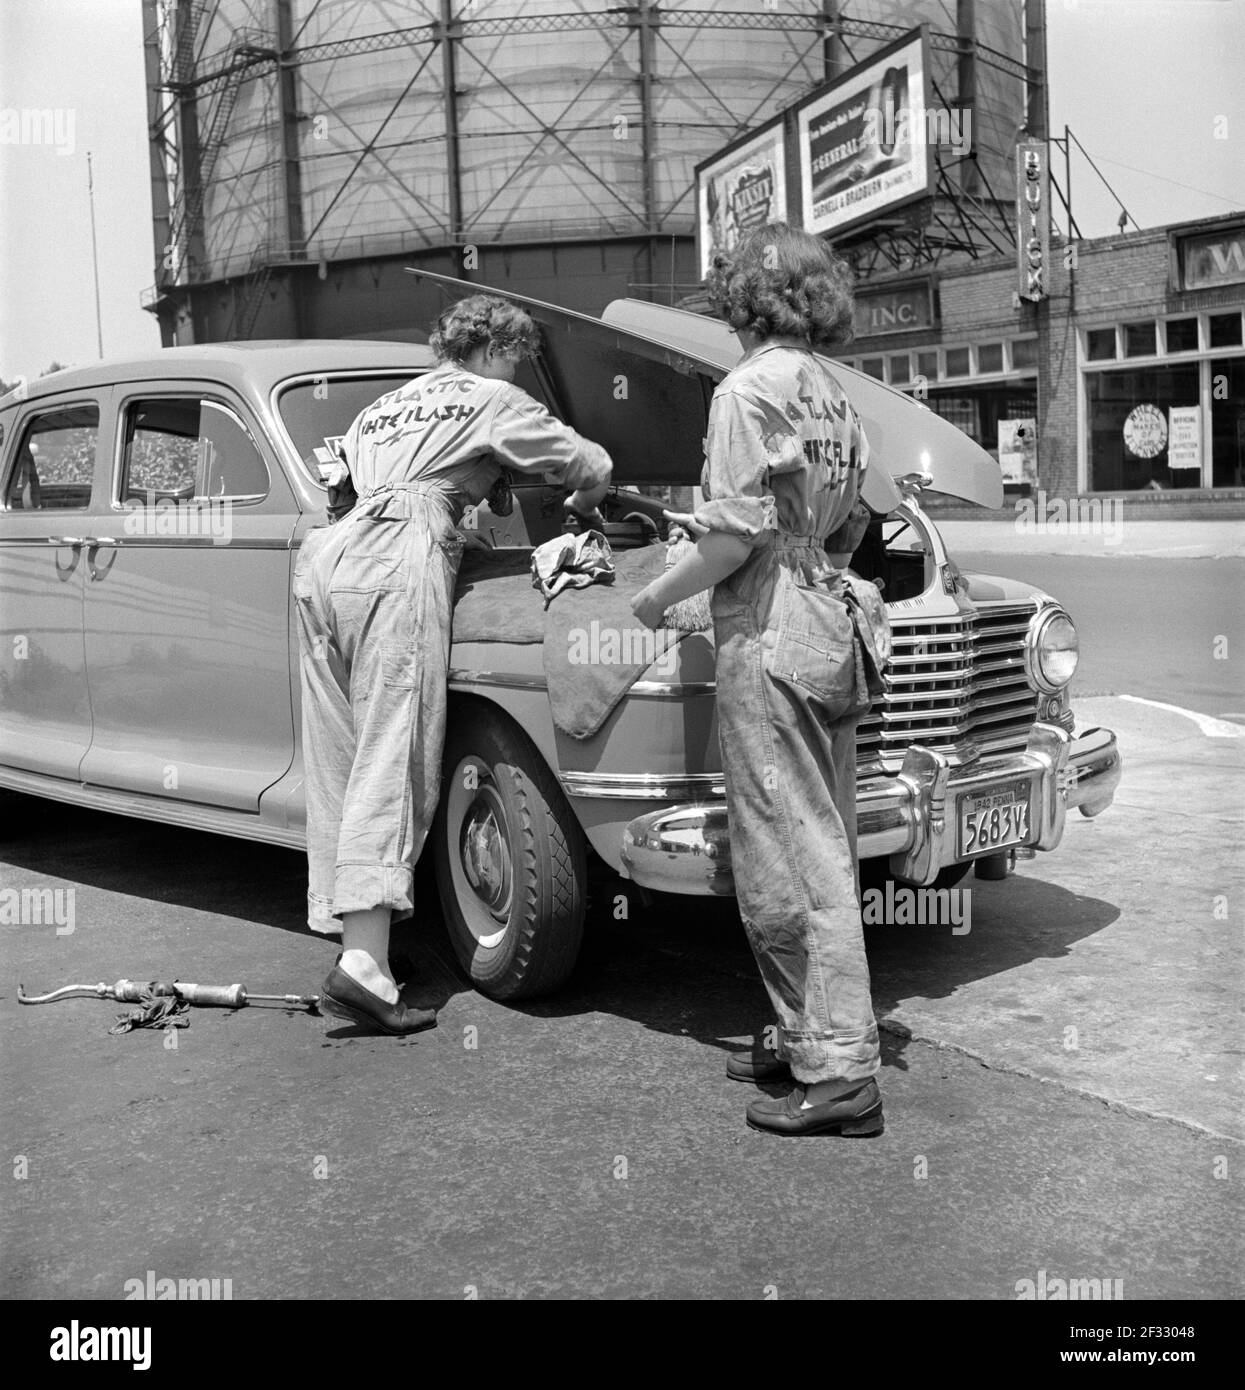 Femmes auxiliaires de garage à Atlantic Refining Company garages, Philadelphie, Pennsylvanie, États-Unis, Jack Delano pour Office of War information, juin 1943 Banque D'Images